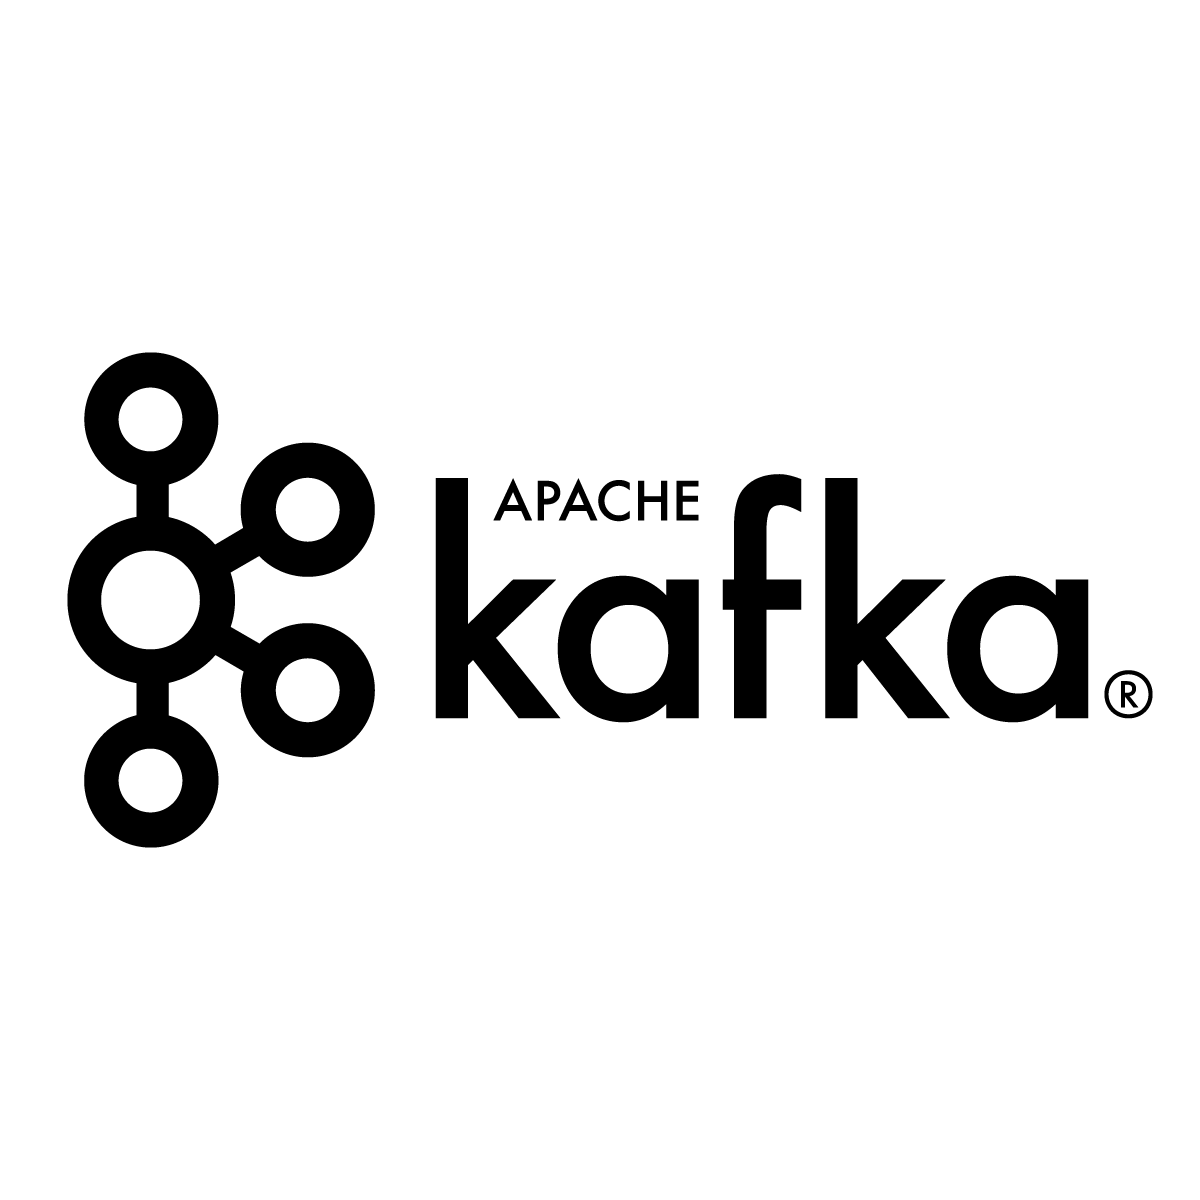 Kafka Logo - Apache Kafka